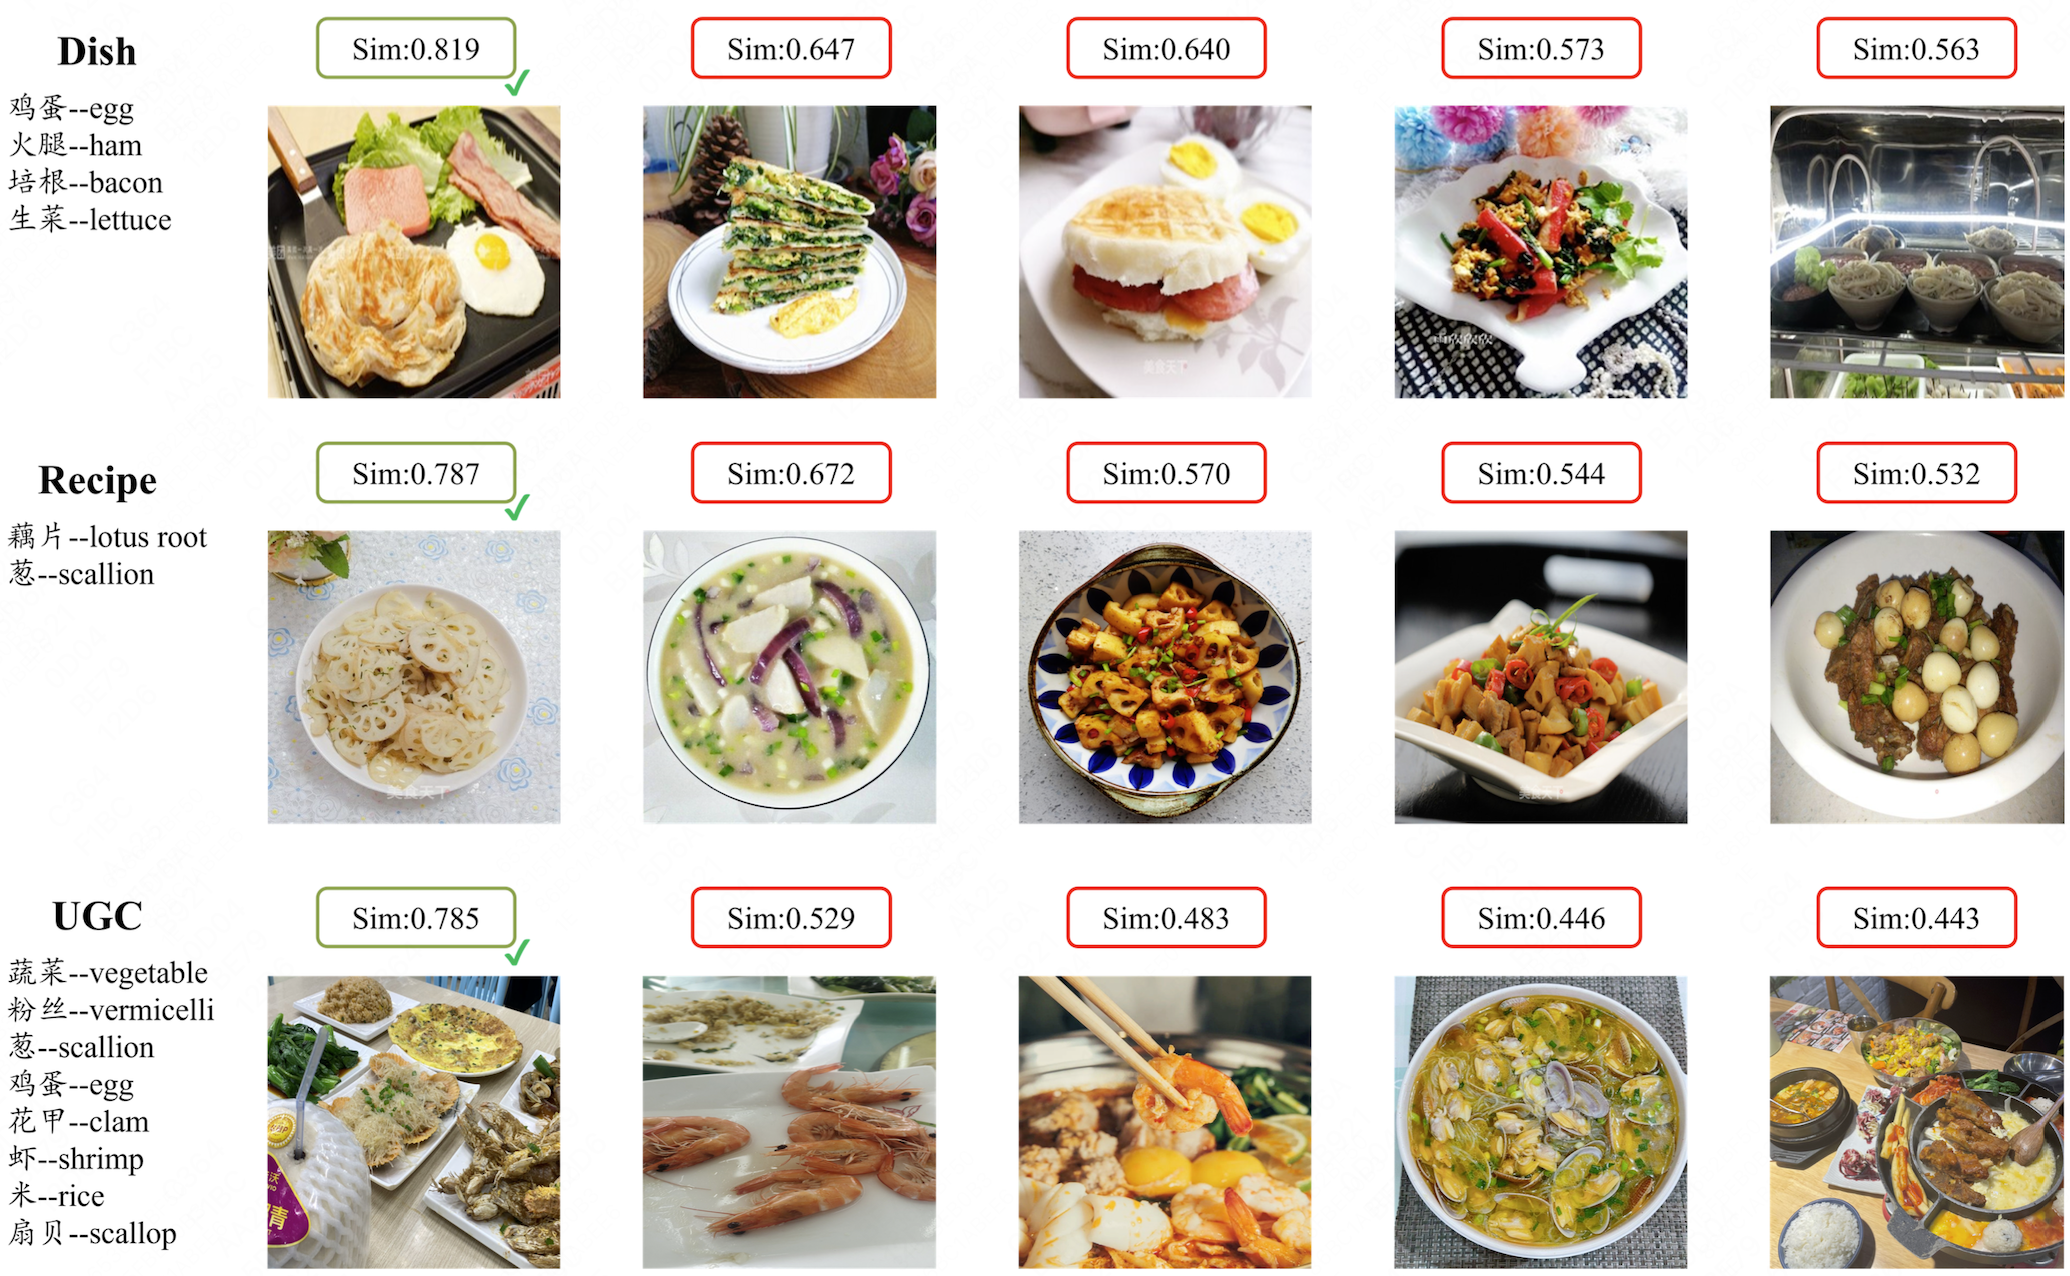 图4.2 使用食材组合检索图像，三种不同来源查询食材组合的top-5检索结果